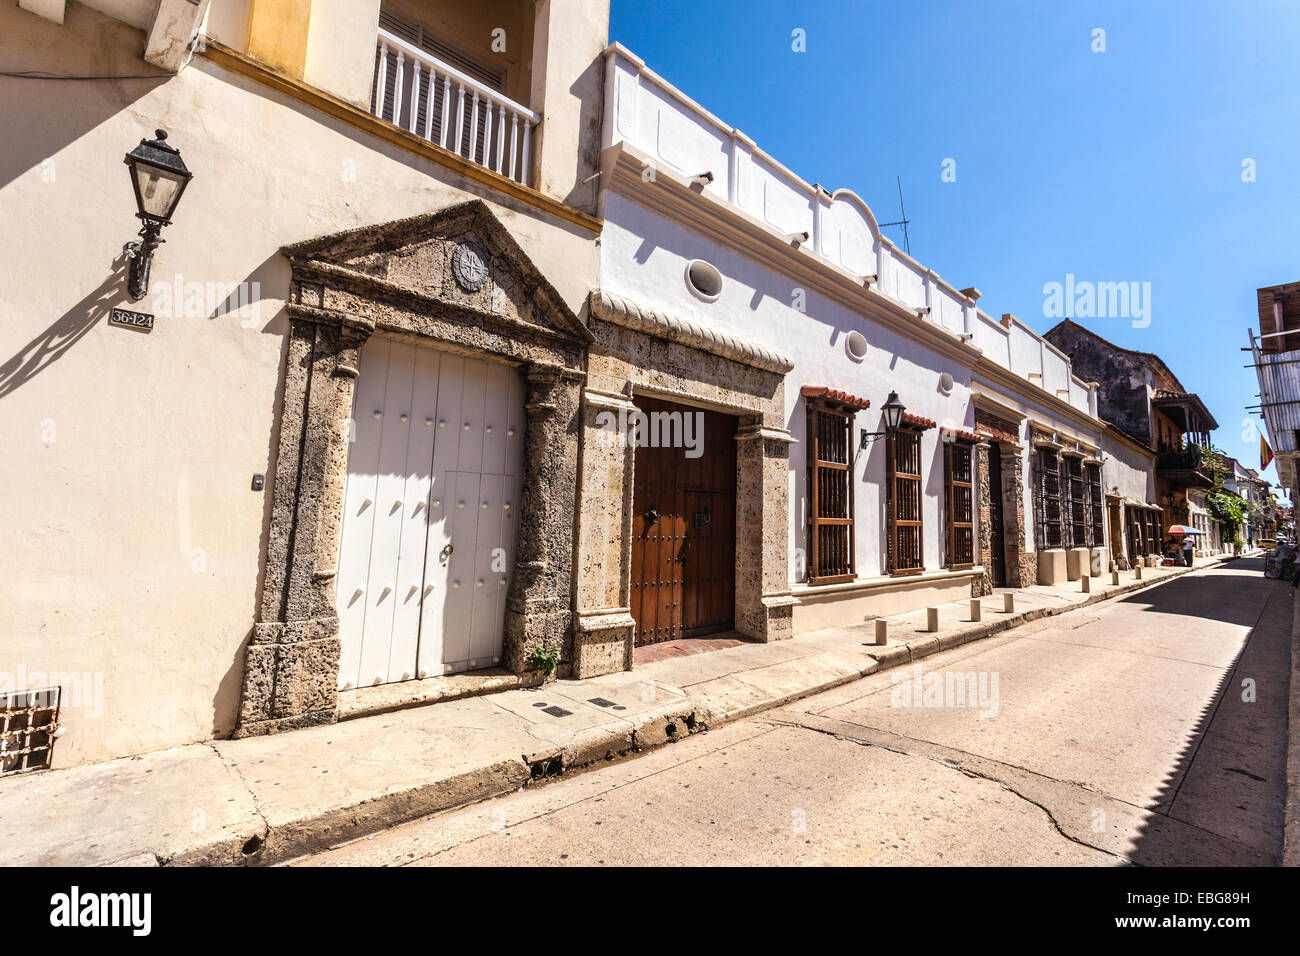 L'architecture coloniale espagnole rangée de maisons, Cartagena de Indias, Colombie. Banque D'Images